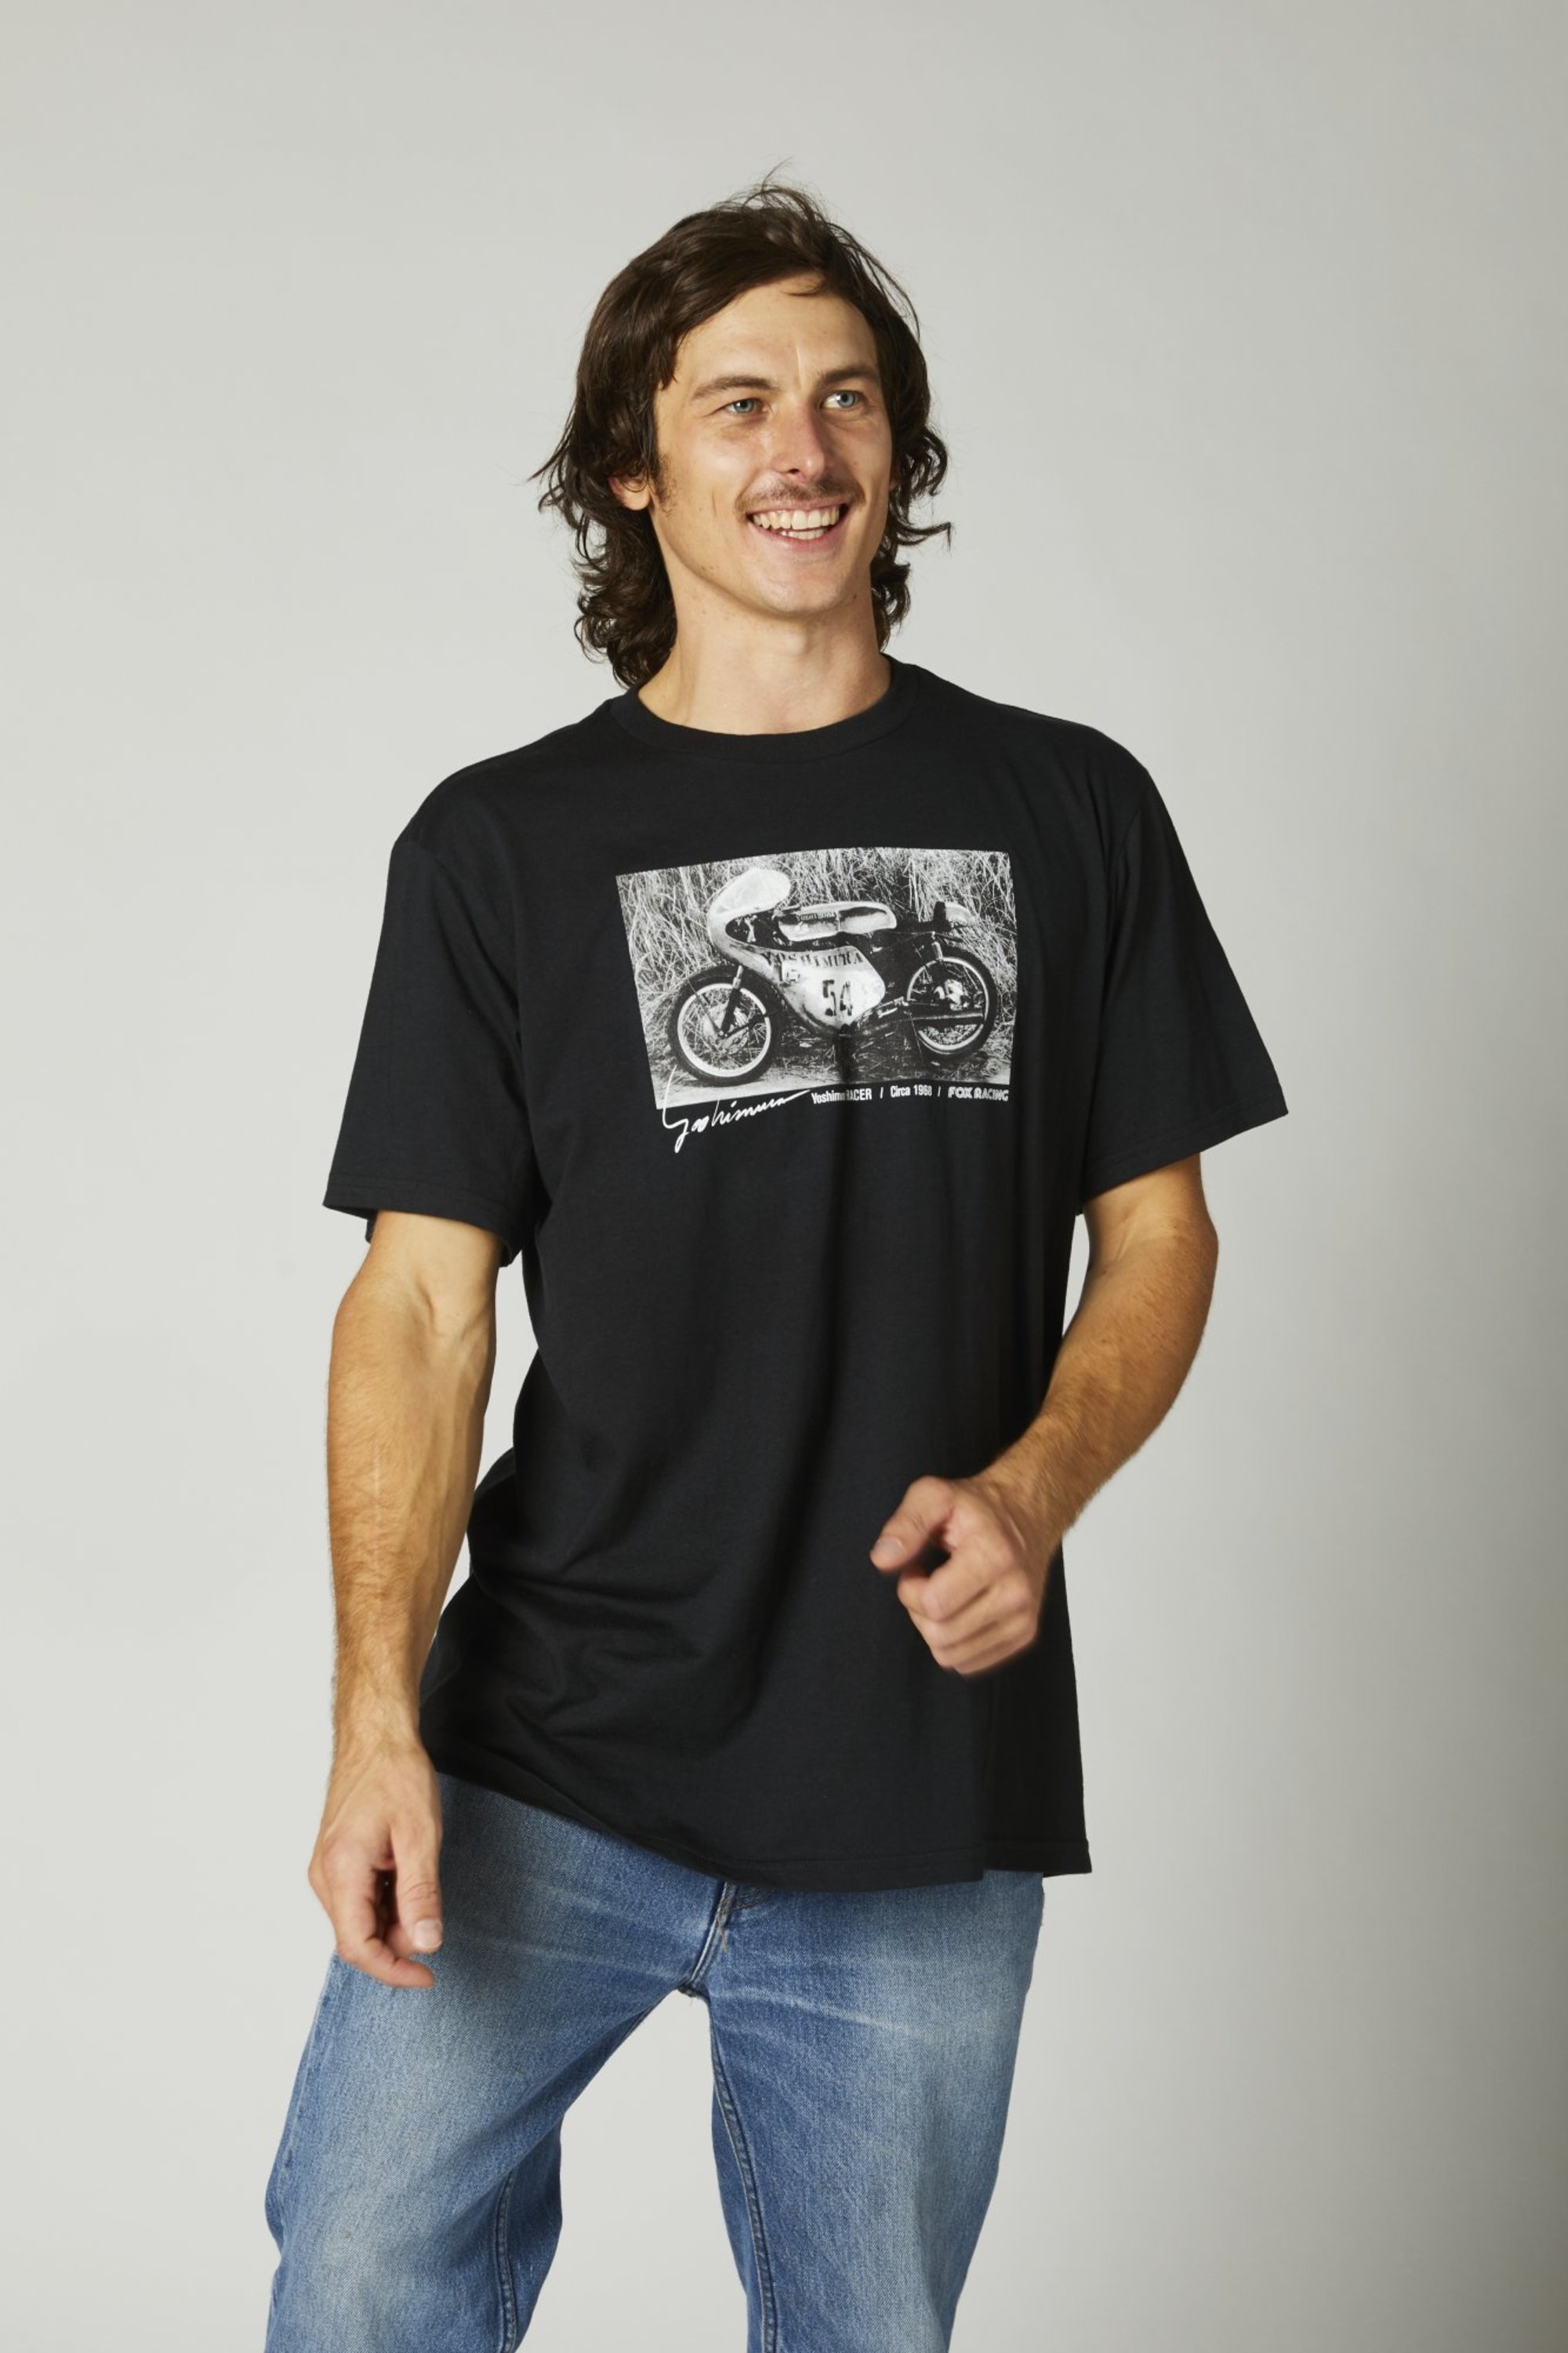 fox racing t-shirt shirts for men yoshimura racer profile